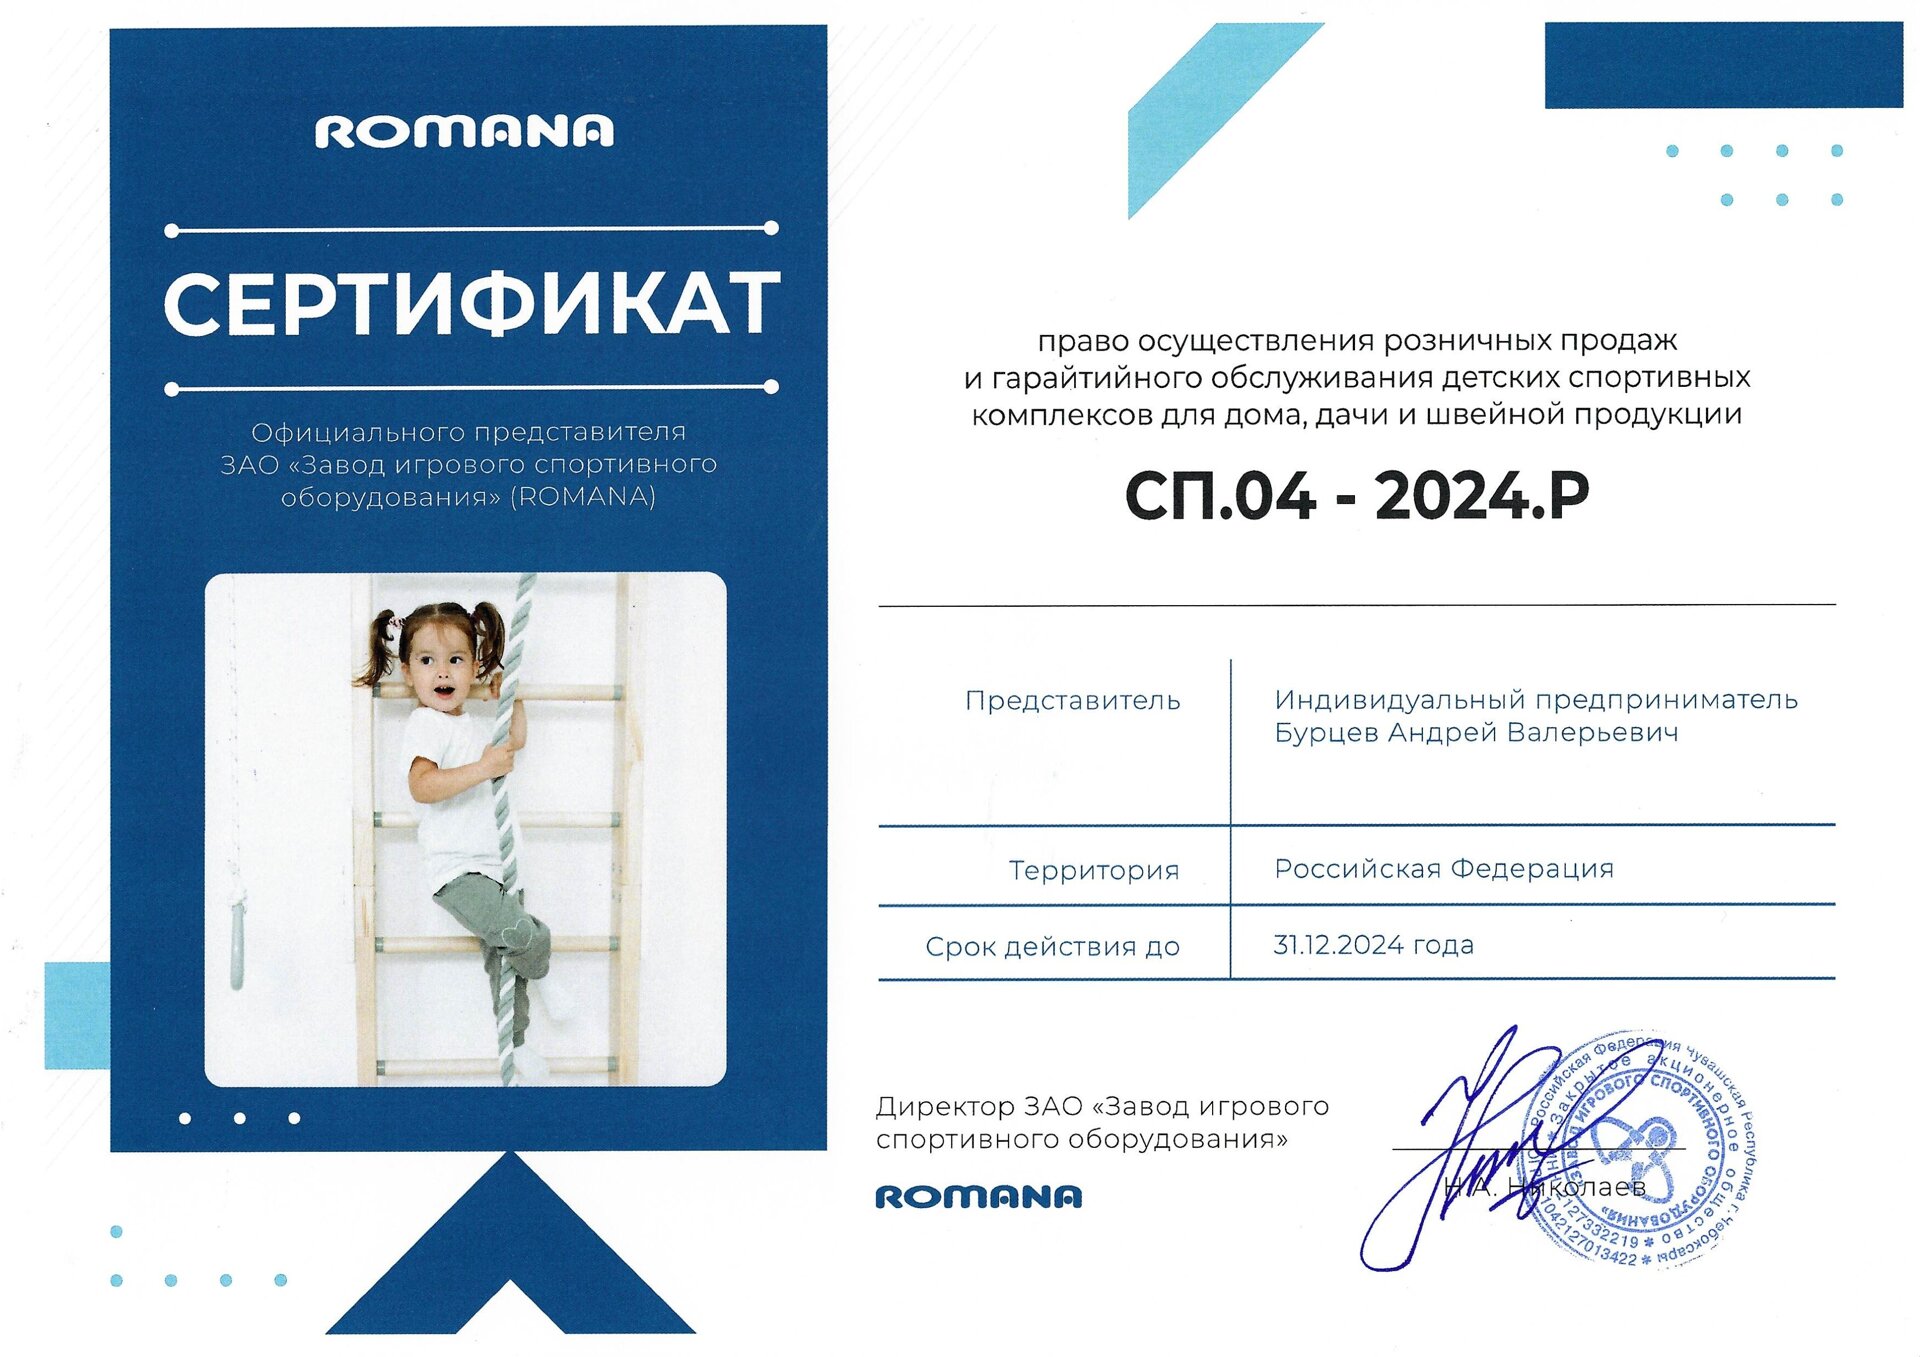 Сертификат официального представителя ЗАО "ЗИСО" (ROMANA)